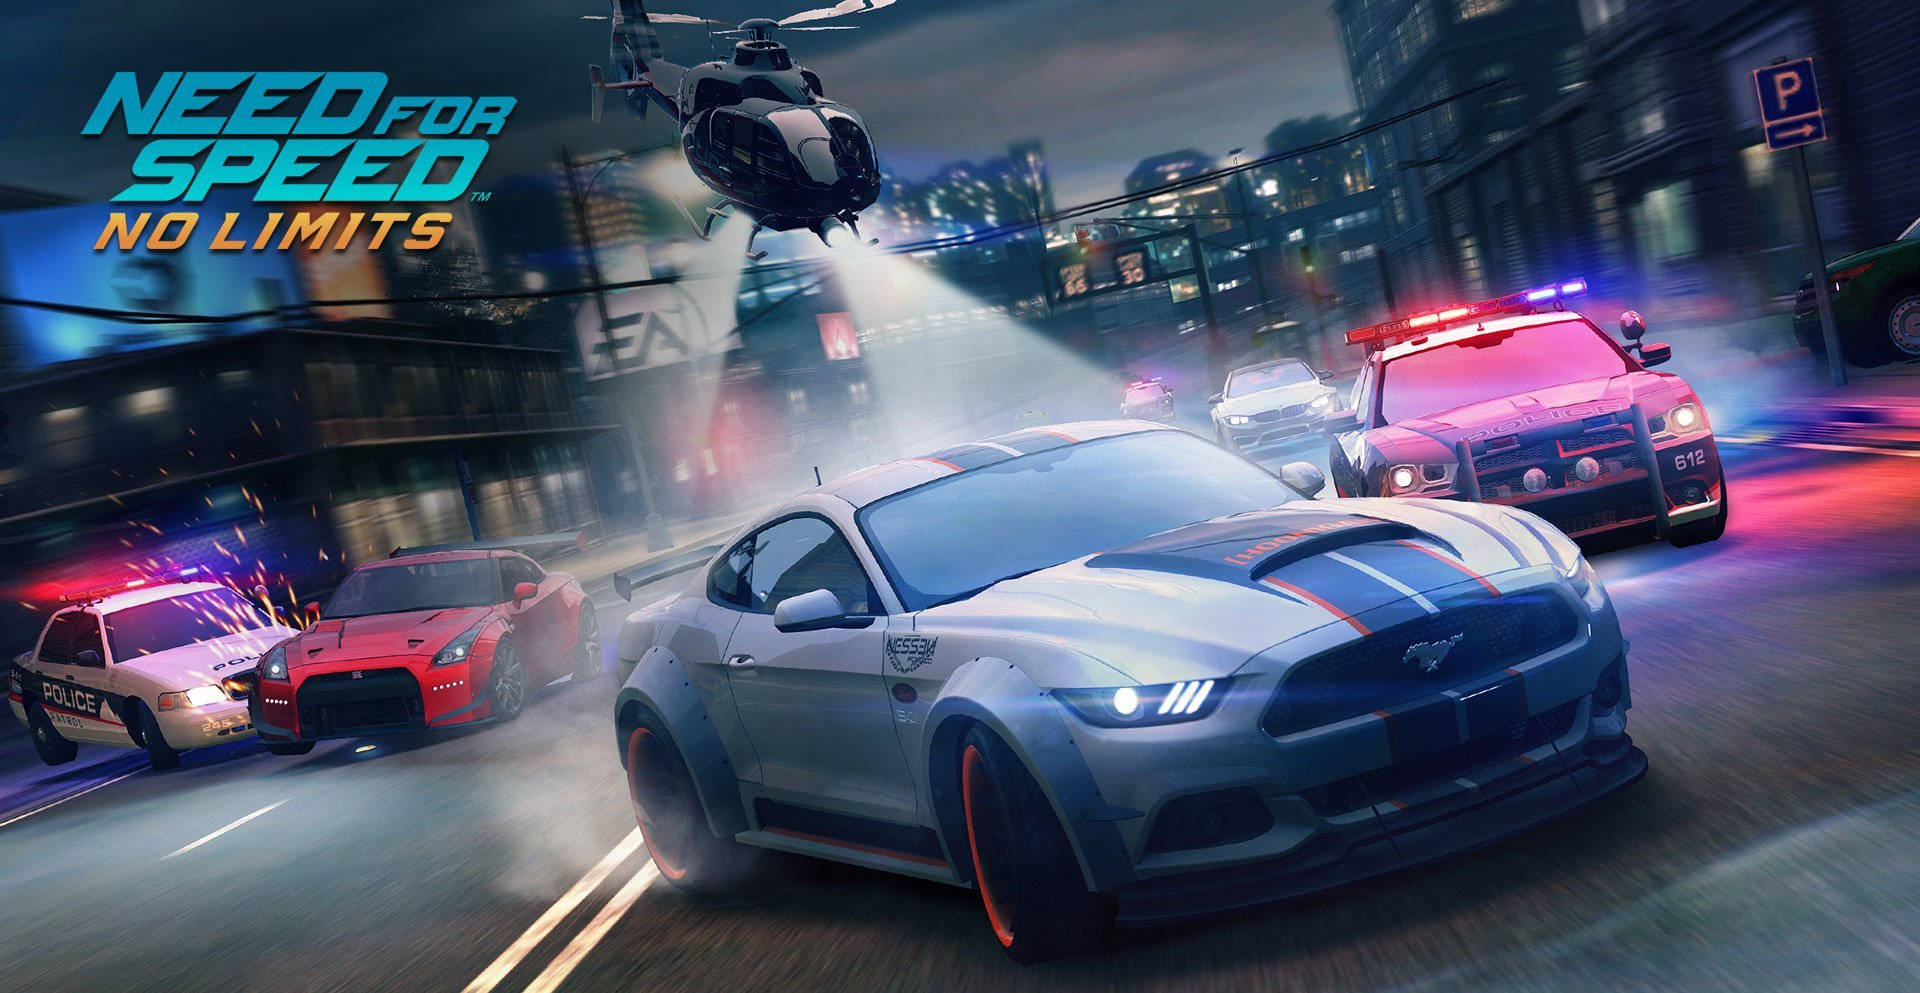 Erlebensie Den Nervenkitzel Von Need For Speed Auf Ihrem Desktop Wallpaper